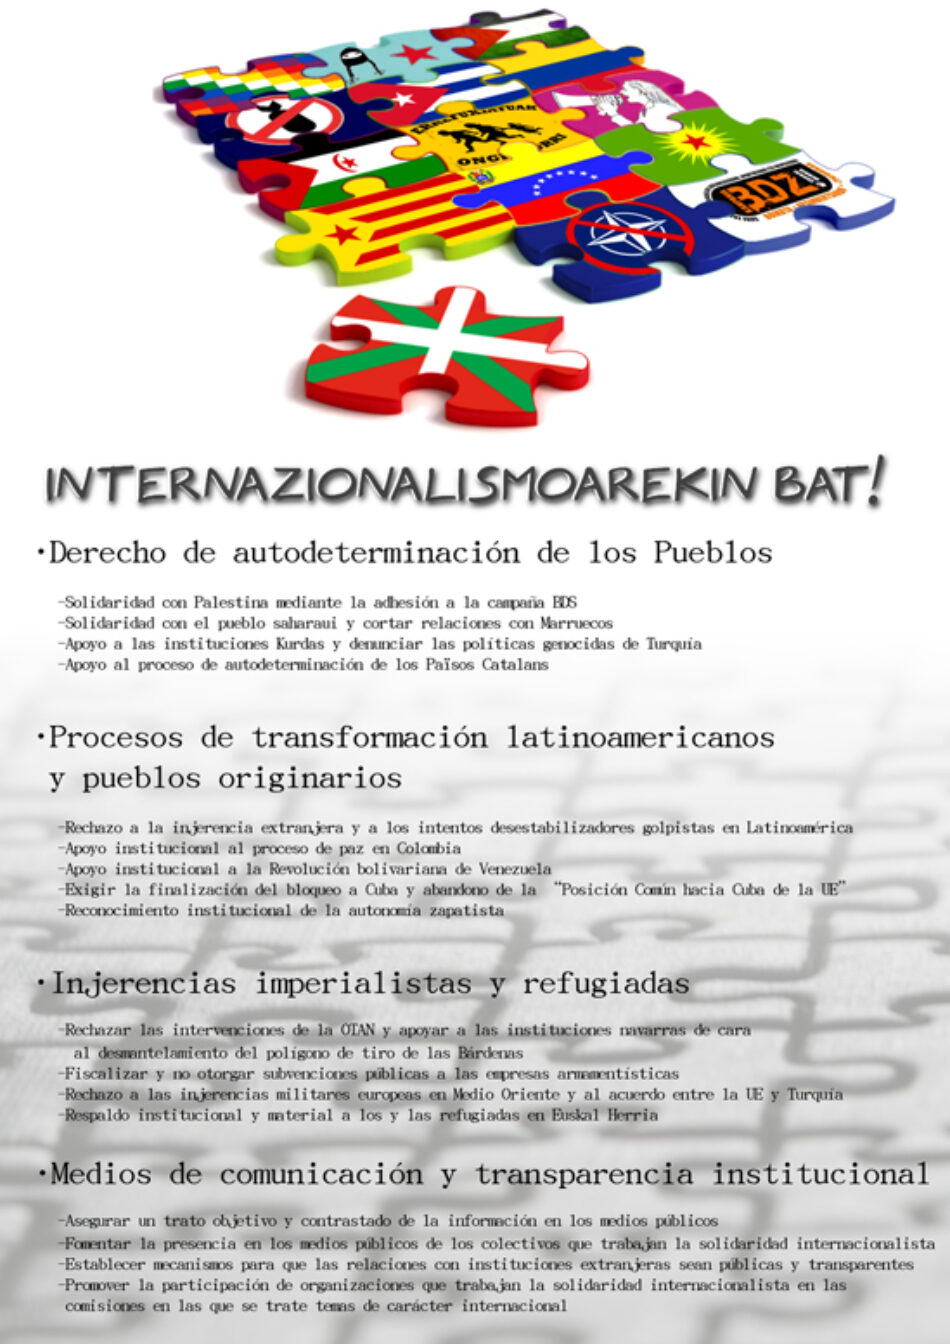 Internazionalismoarekin bat!: campaña introduce internacionalismo en las elecciones vascas y pide apoyo a Cuba y Venezuela